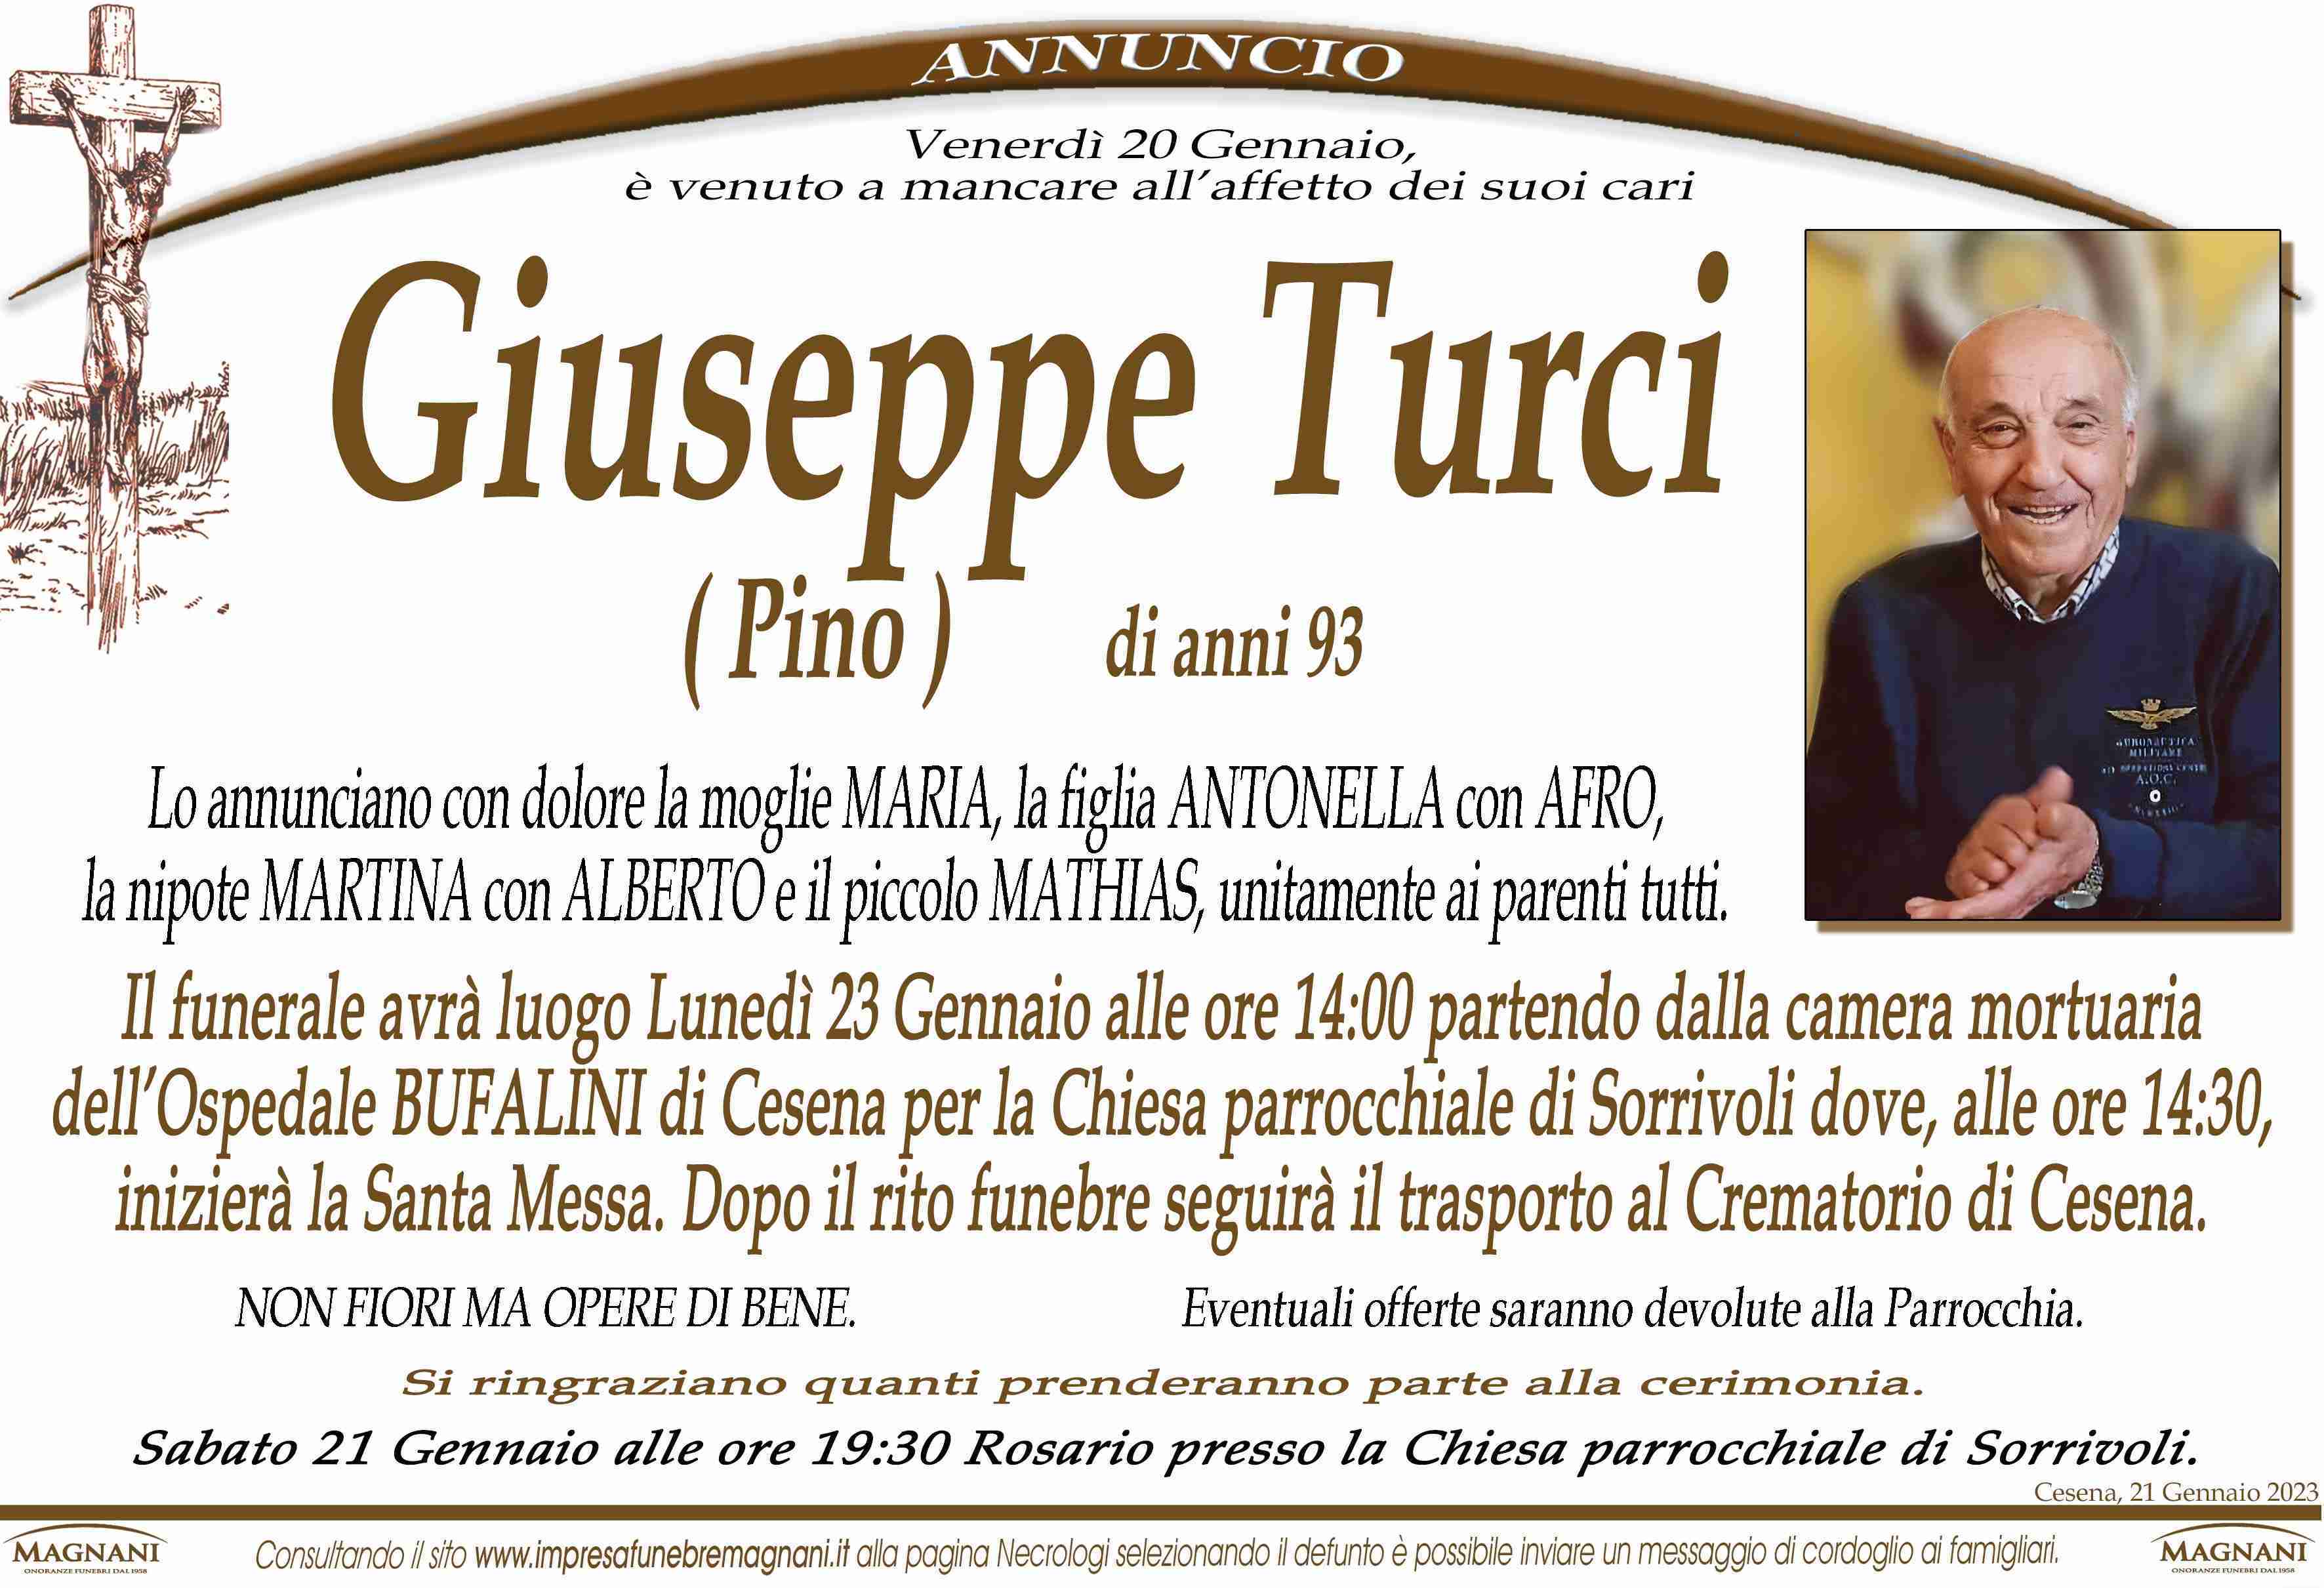 Giuseppe (Pino) Turci